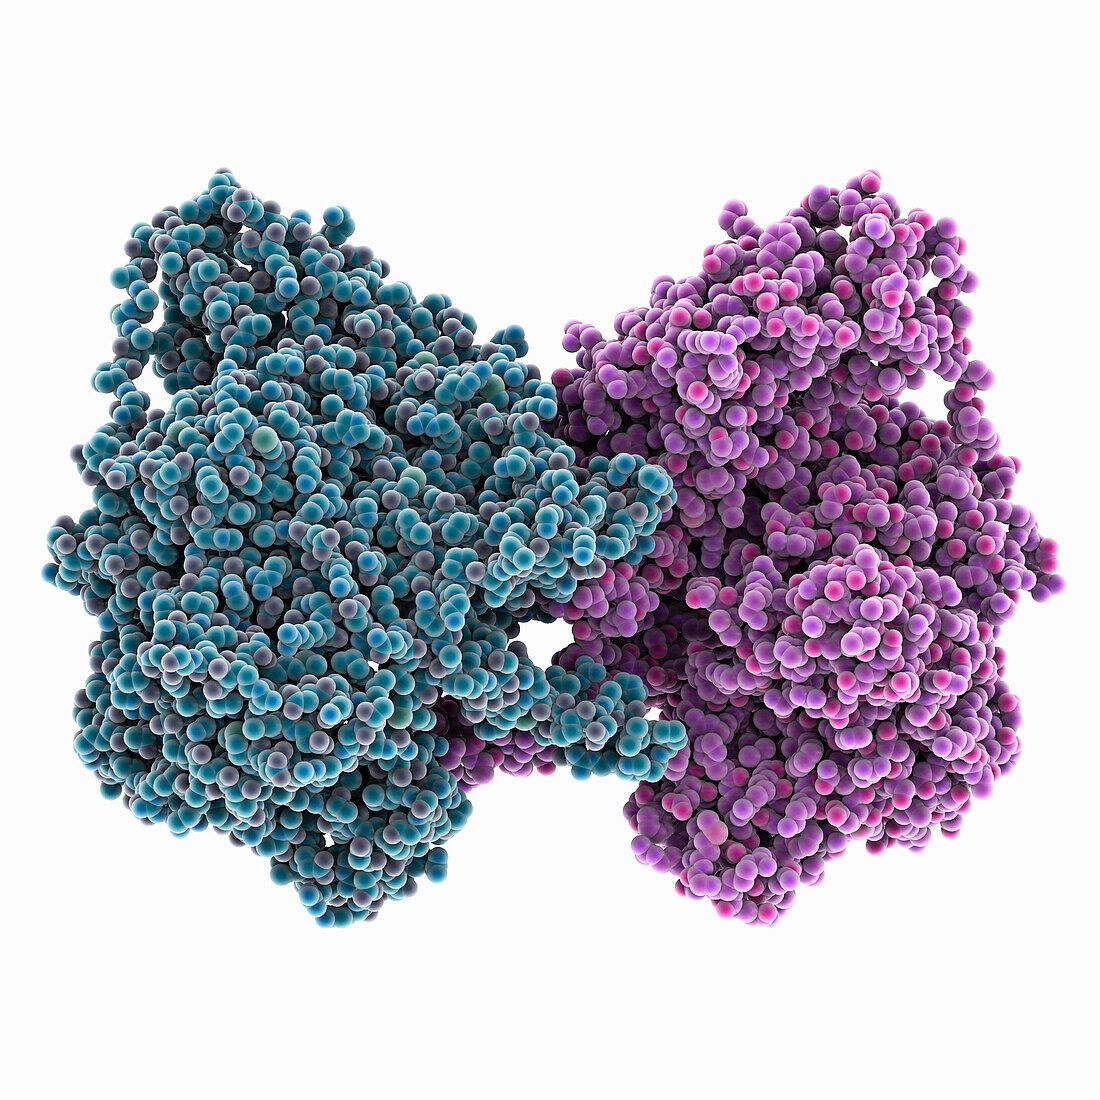 DNA dependent RNA polymerase, molecular model